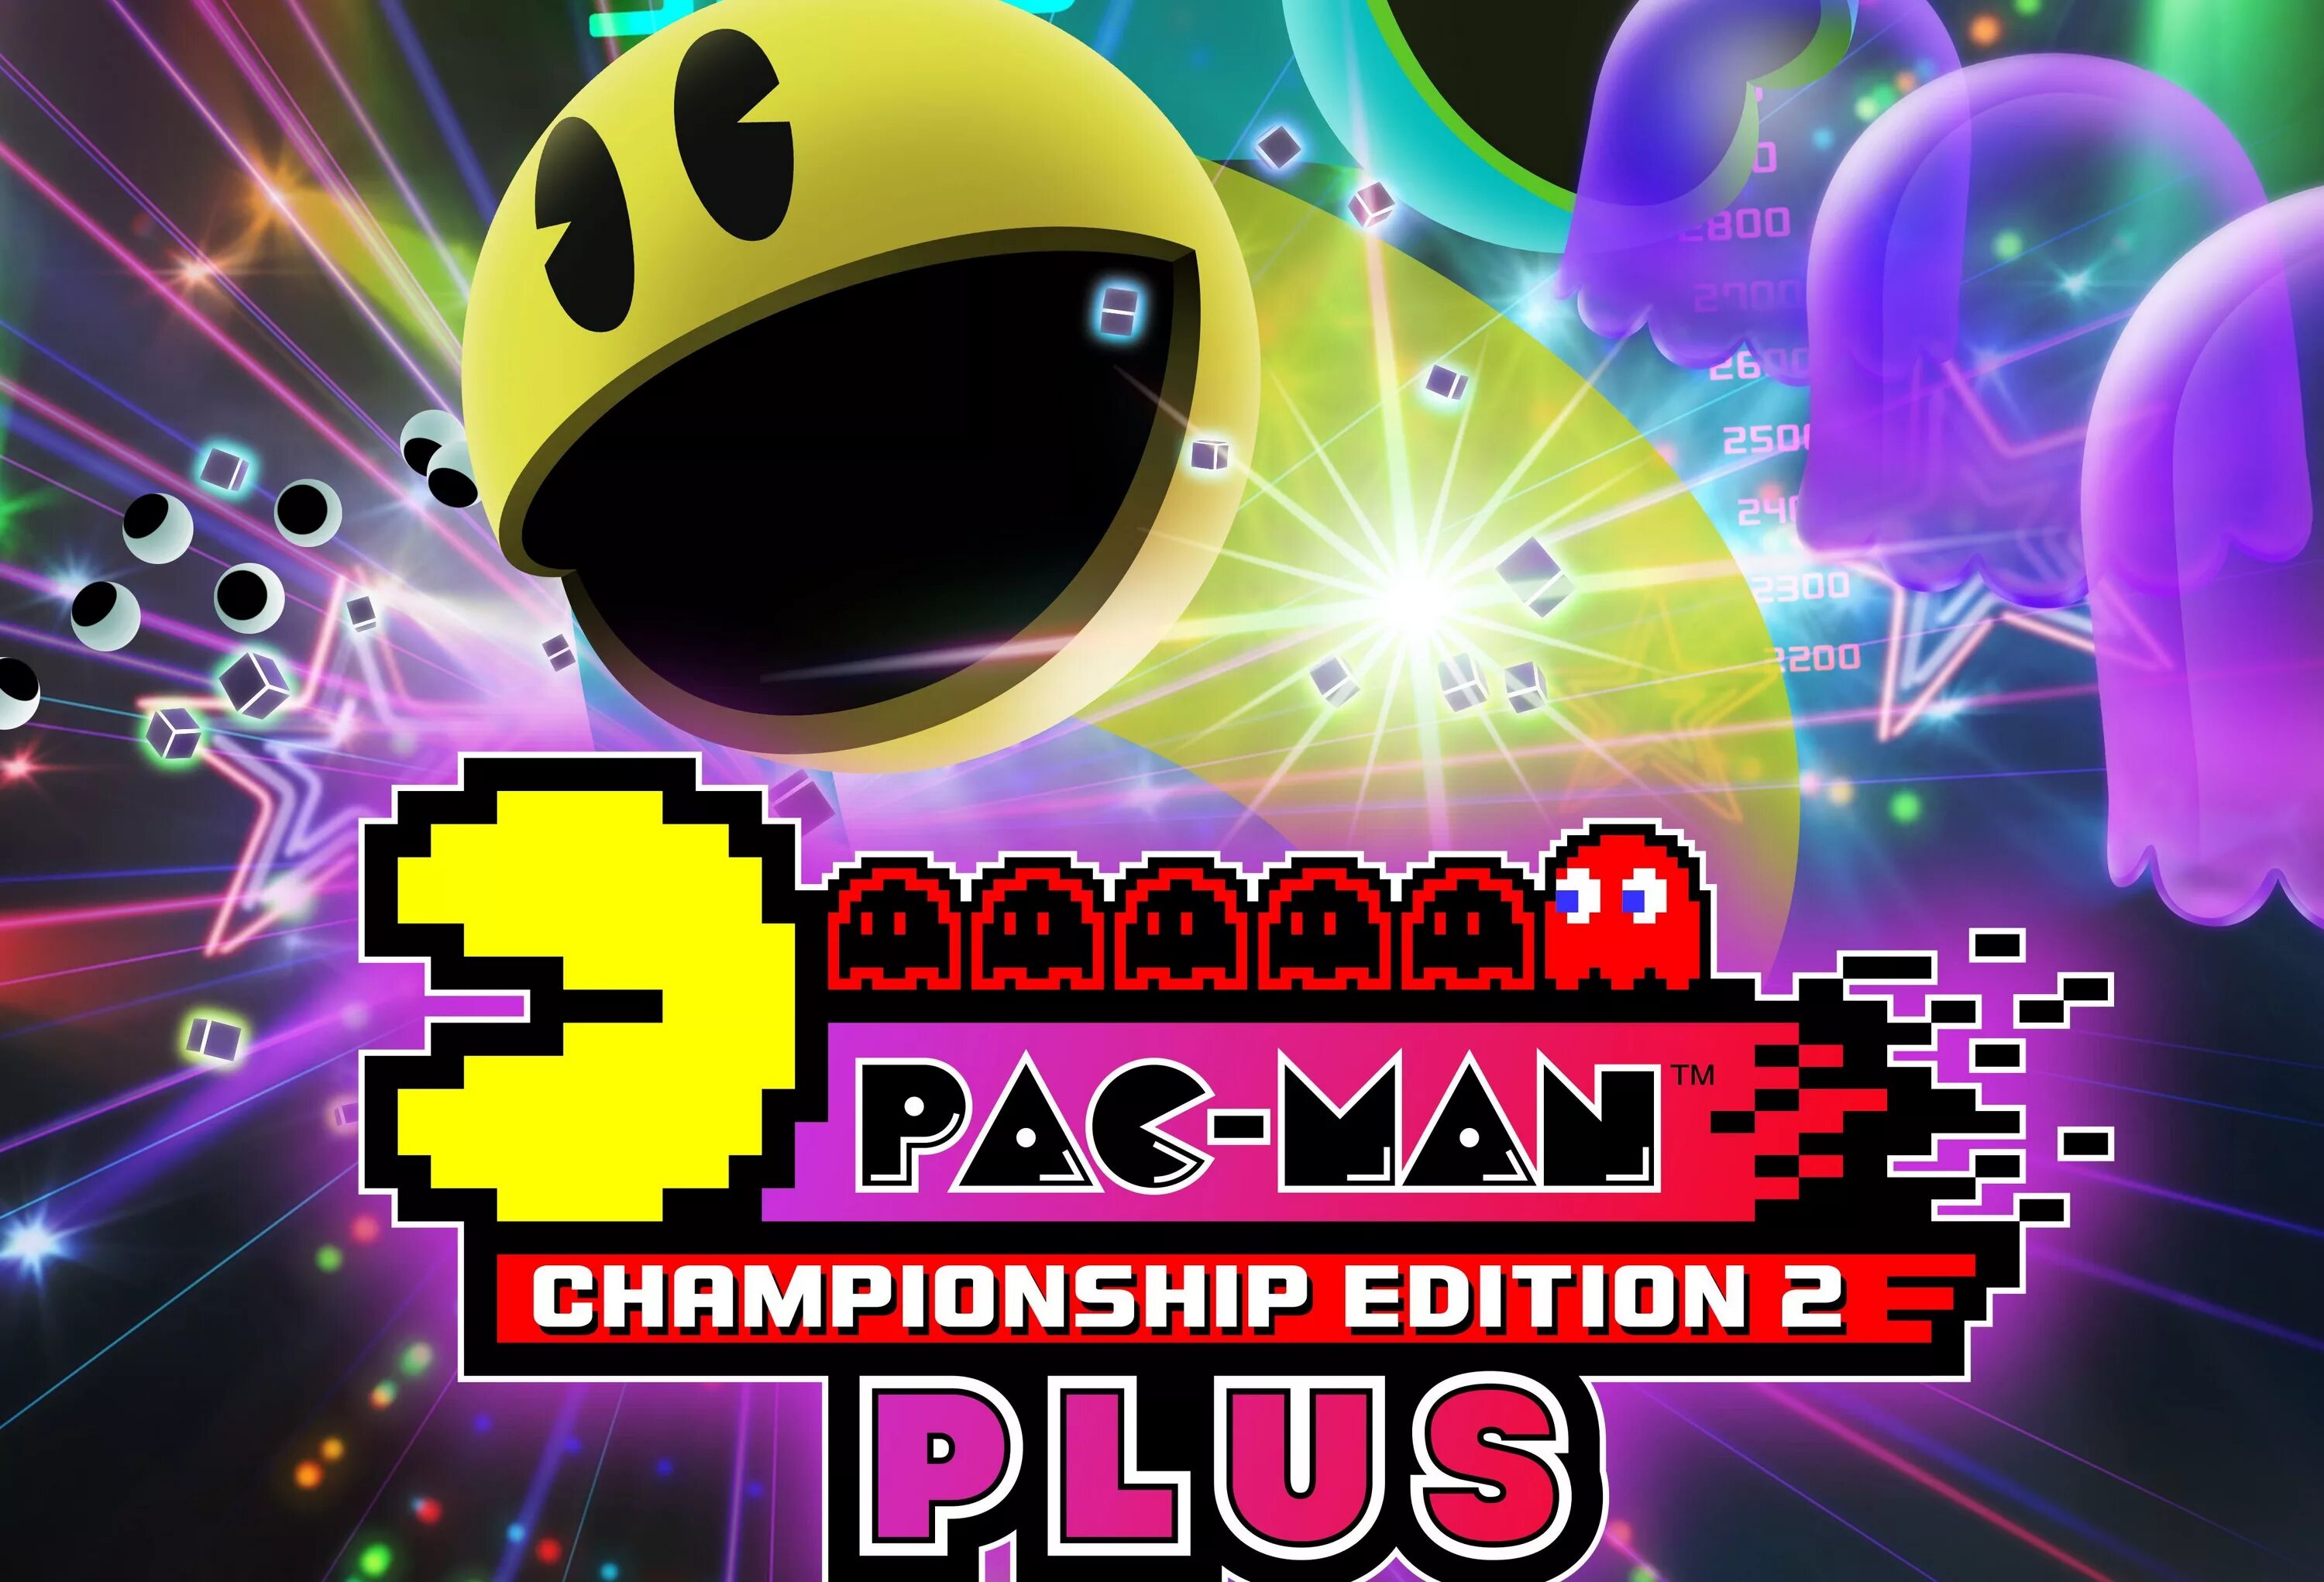 Pac man championship. Pac-man Championship Edition 2. Pacman Championship Edition 2 Plus. Pac-man Championship Edition. Pacman 2 Championship Edition 2.